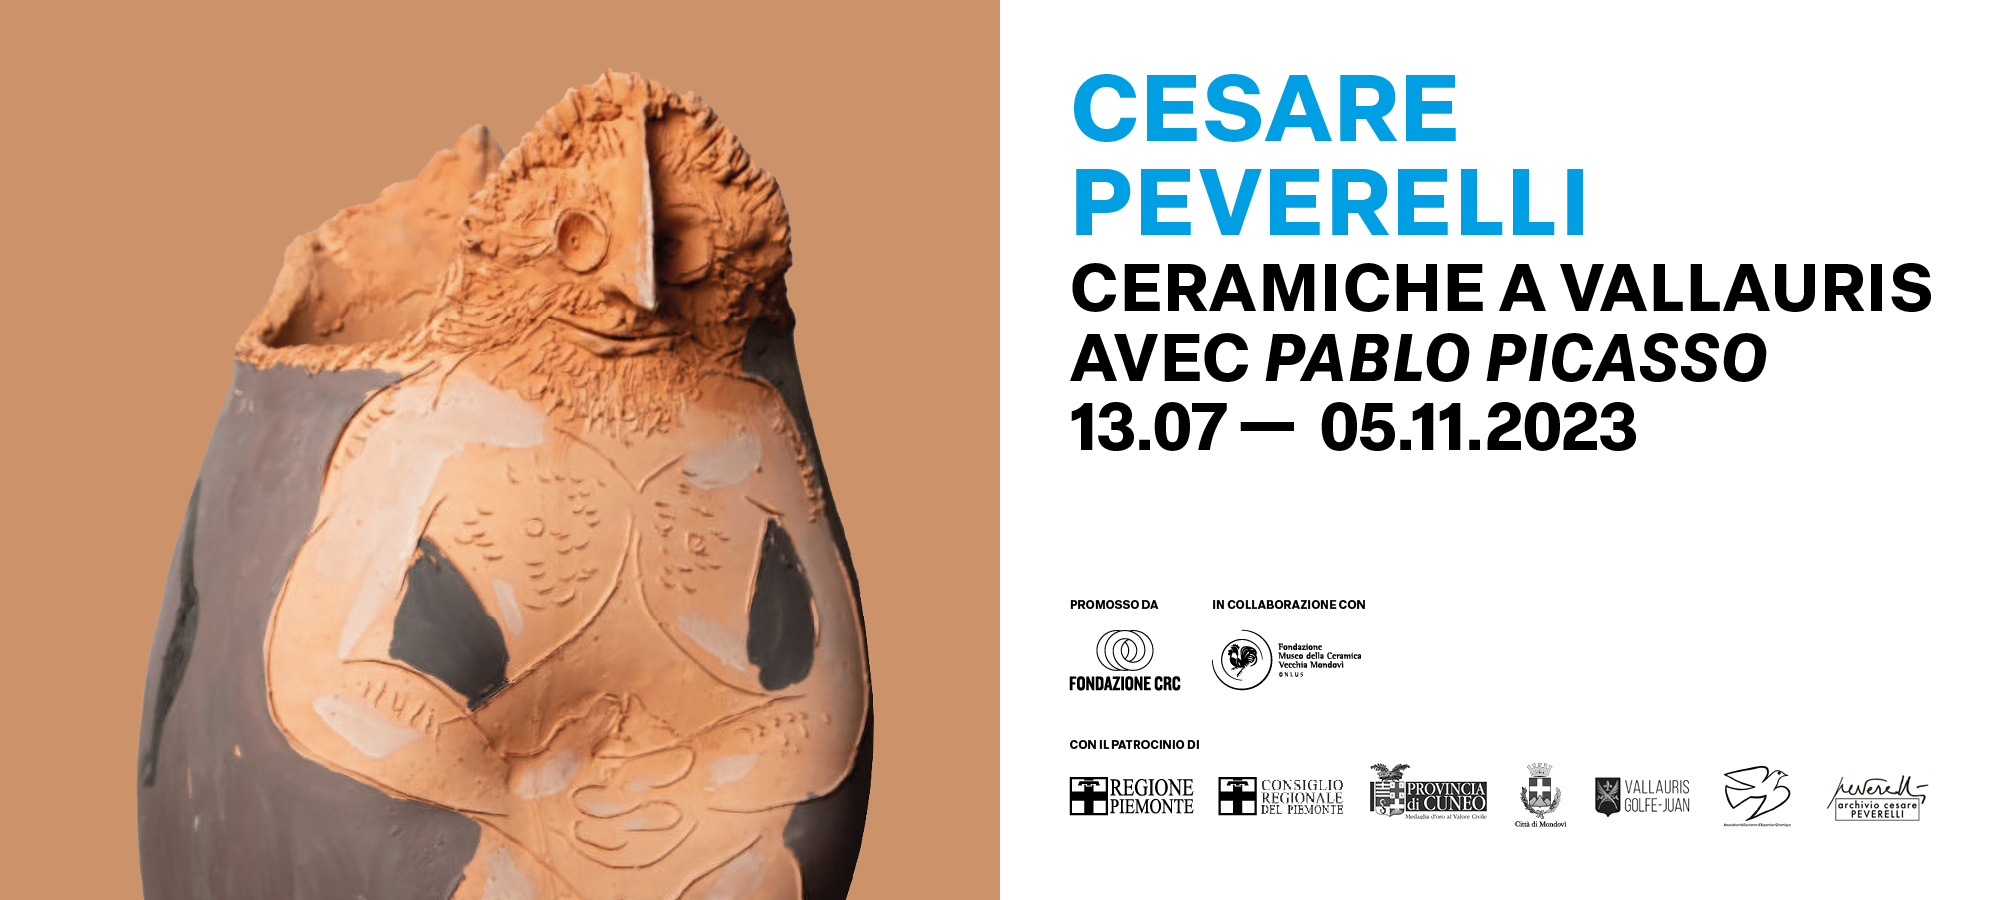 Inaugurazione della mostra: Cesare Peverelli avec Pablo Picasso